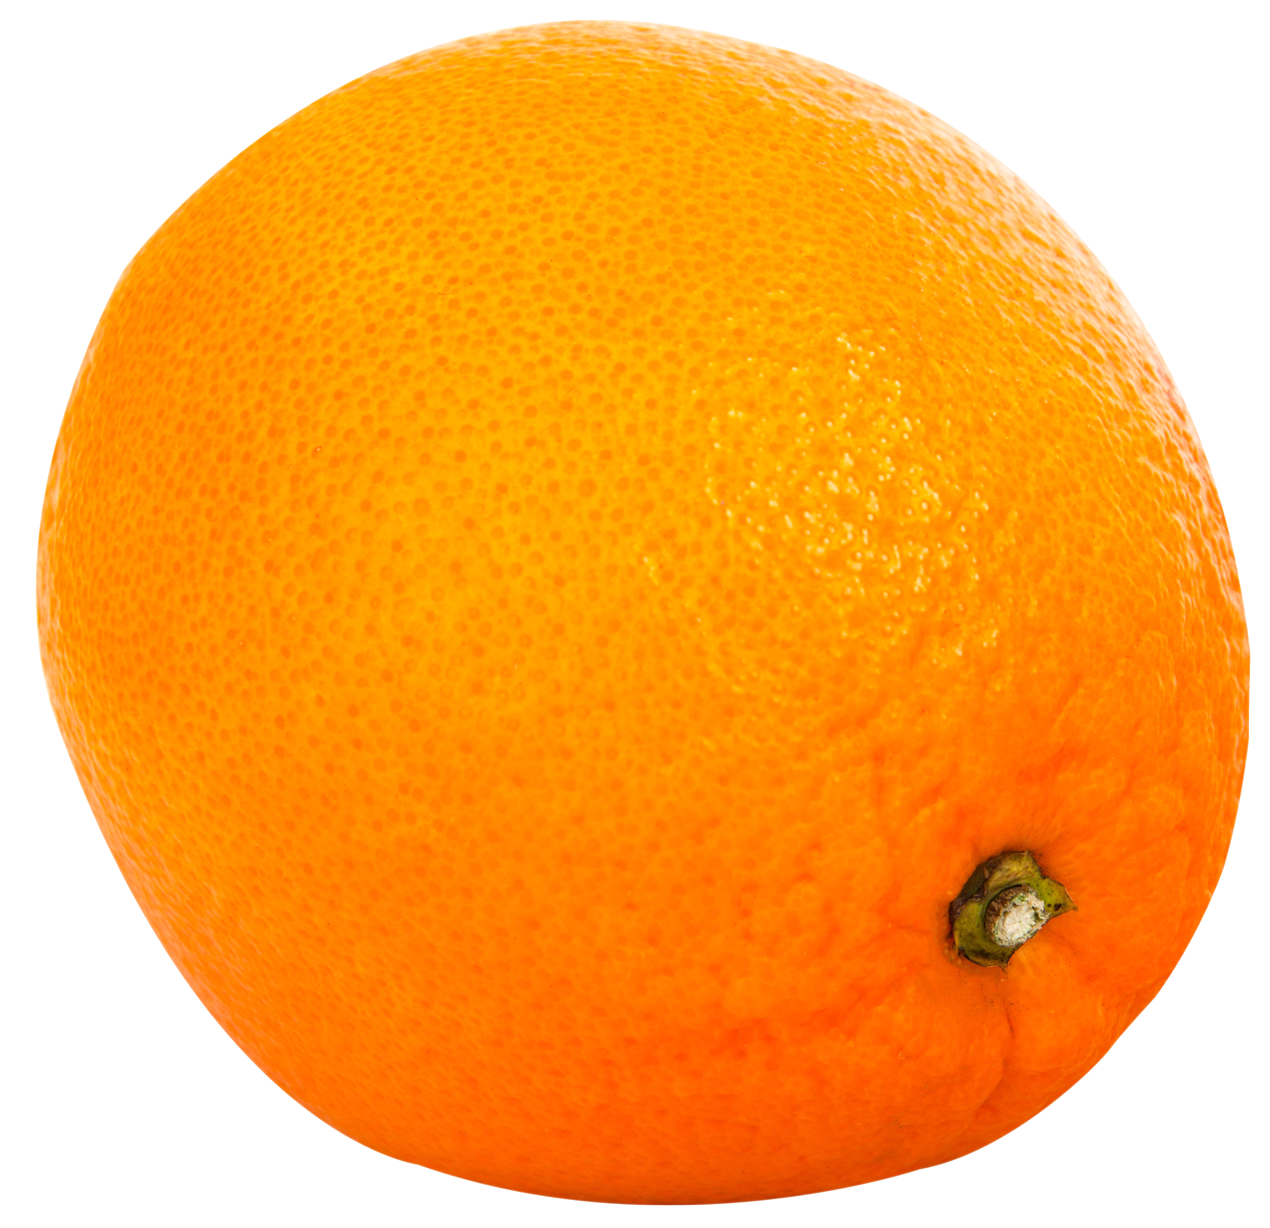 Fresh Whole Orange Fruit PNG image